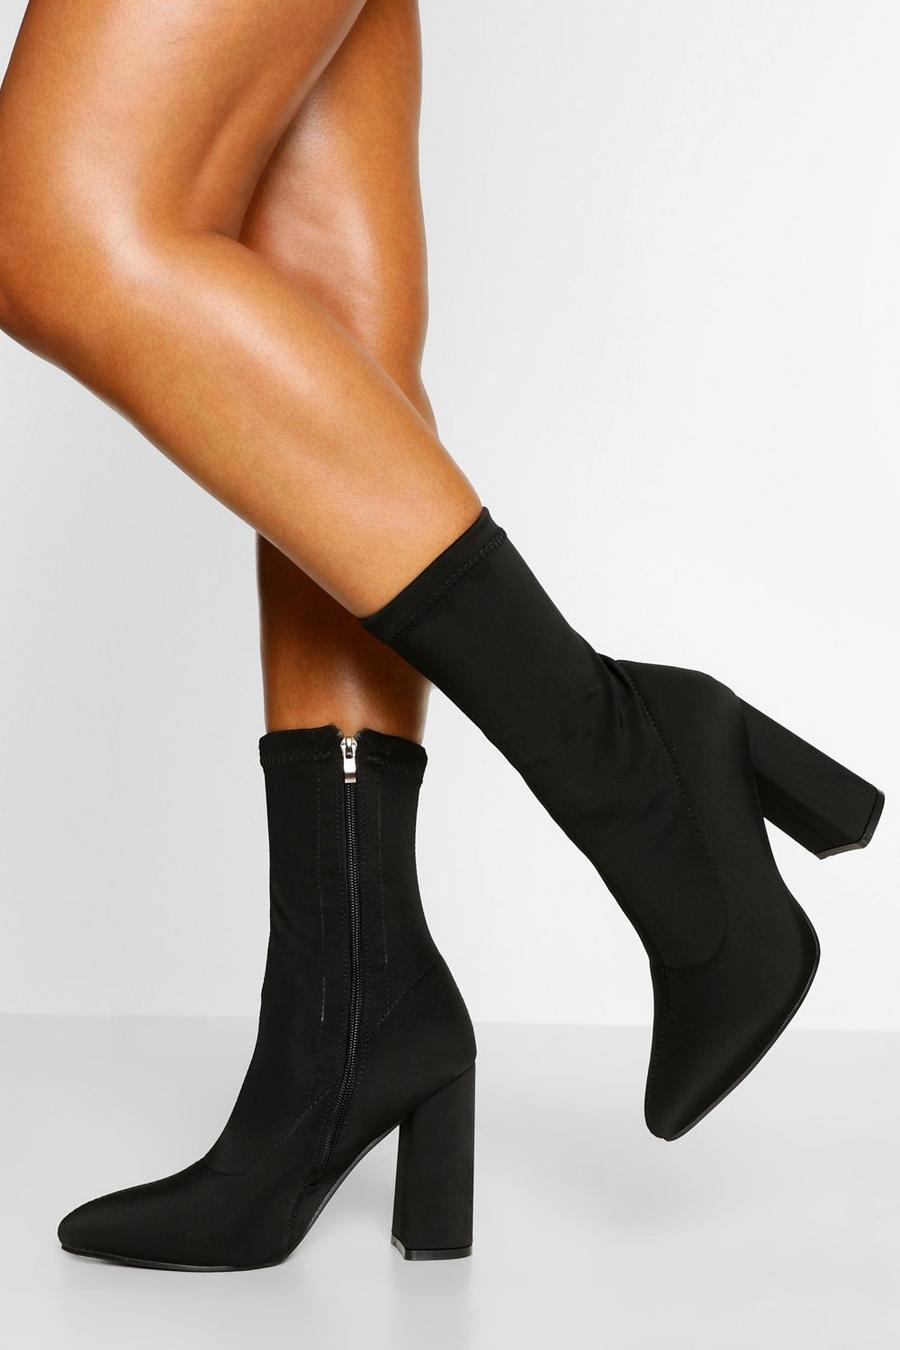 Botas calcetín de holgura ancha con tacón grueso y punta de pico, Negro nero